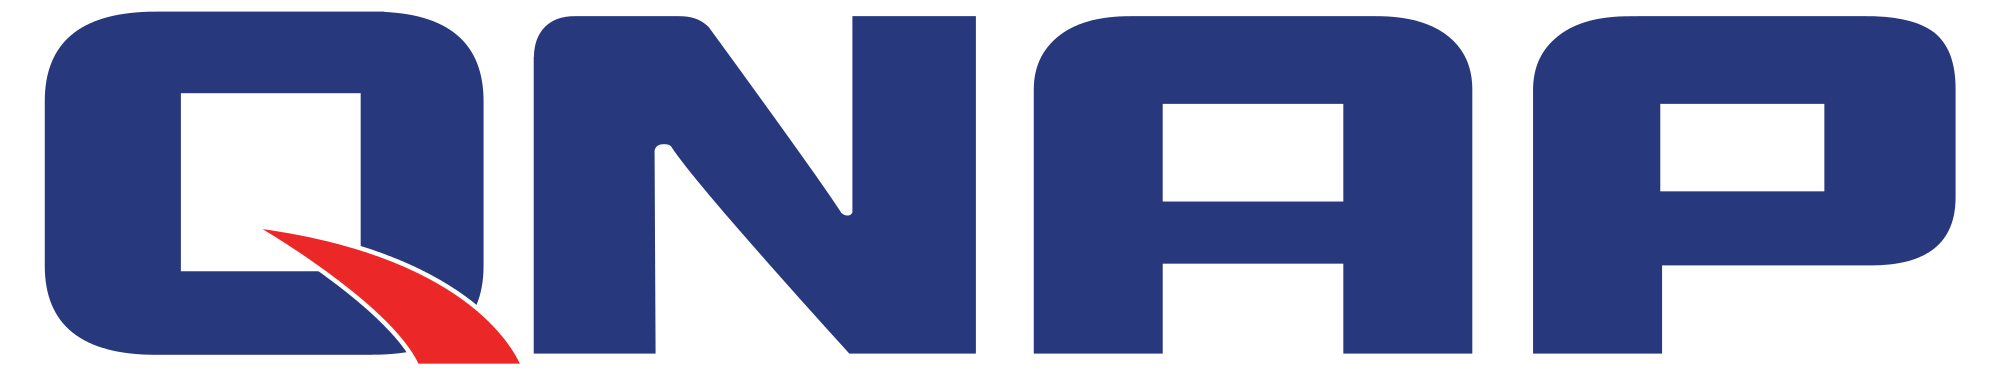 Qnap Logo